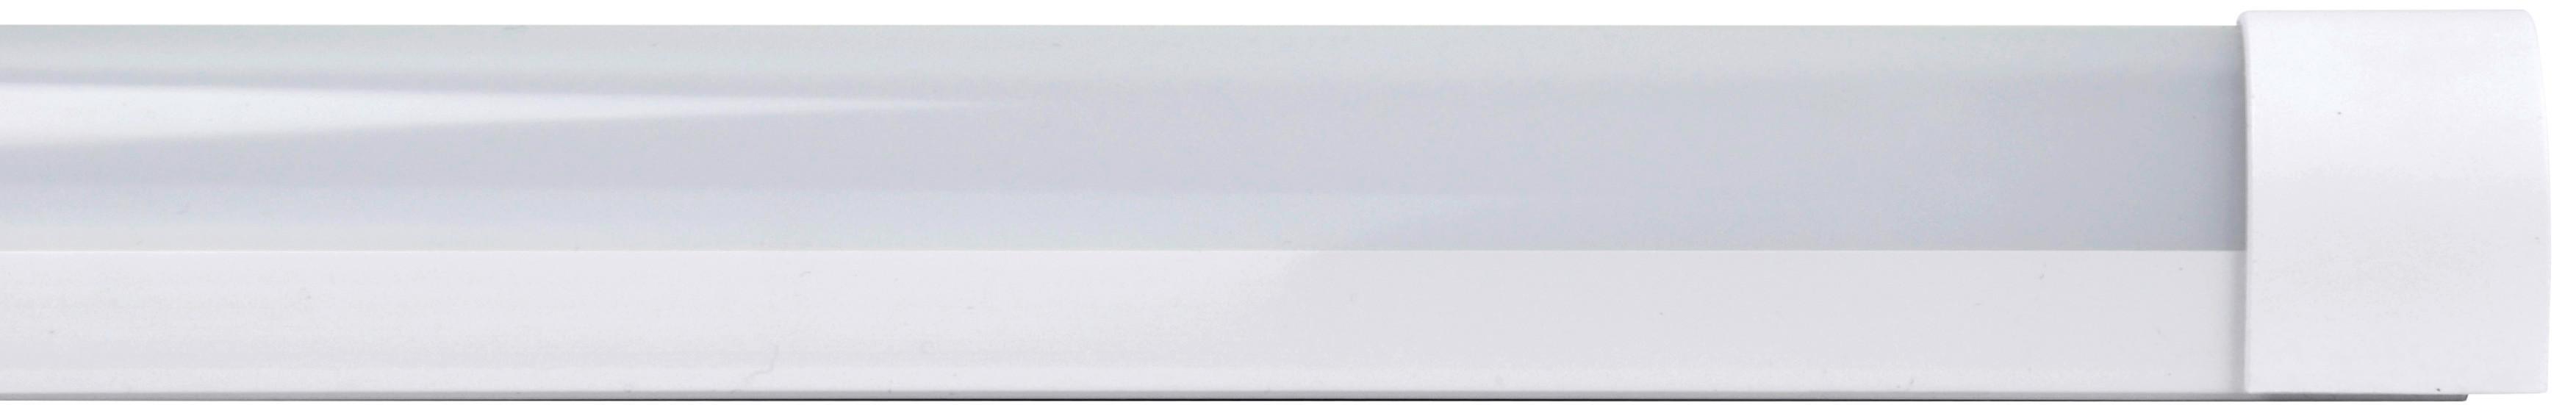 Unterbauleuchte 1x Led 12 W, aus Kunststoff Weiß, 220-240 V - Weiß, Basics, Kunststoff (40/7,7/3,5cm)